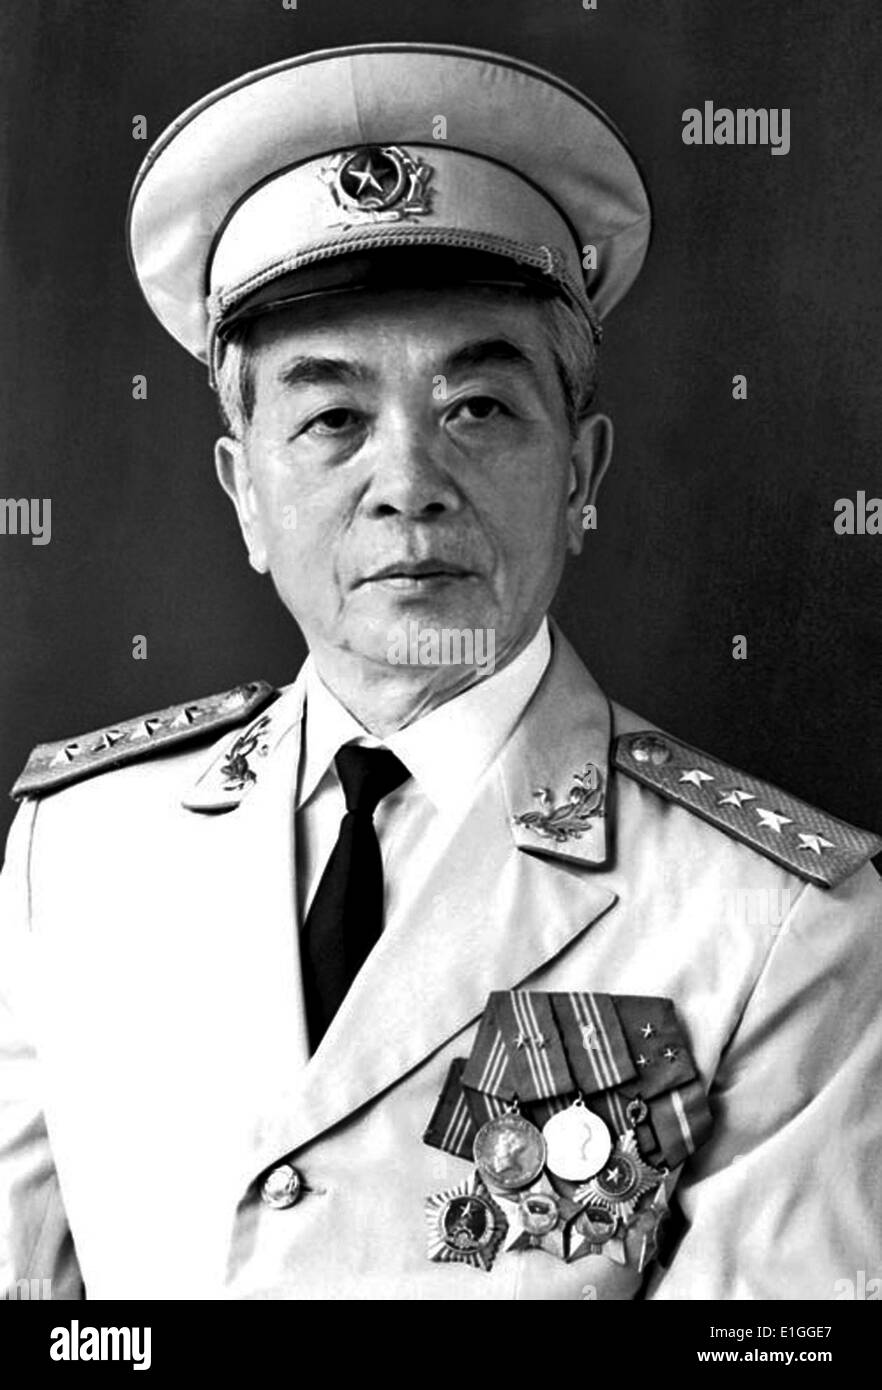 Võ Nguyên Giáp 1911 - 4 Oktober 2013) Allgemein in der vietnamesischen Volksarmee und Politiker. Er zuerst zum Vorsprung wuchs während des Zweiten Weltkriegs, wo er als militärischer Führer der Viet Minh Widerstand gegen die japanische Besatzung Vietnam serviert. Giáp war Commander in zwei Kriegen: Der erste Indochina Krieg (1946-54) und der Vietnam Krieg (1960 - 1975). Er beteiligte sich an der folgenden historisch bedeutenden Schlachten: Lạng Sơn (1950), Hòa Binh (1951-52), Điện Biên Phủ (1954), das Tết Offensive (1968), die Ostern Offensive (1972), und der abschließende Ho Chi Minh Kampagne (1975). Stockfoto